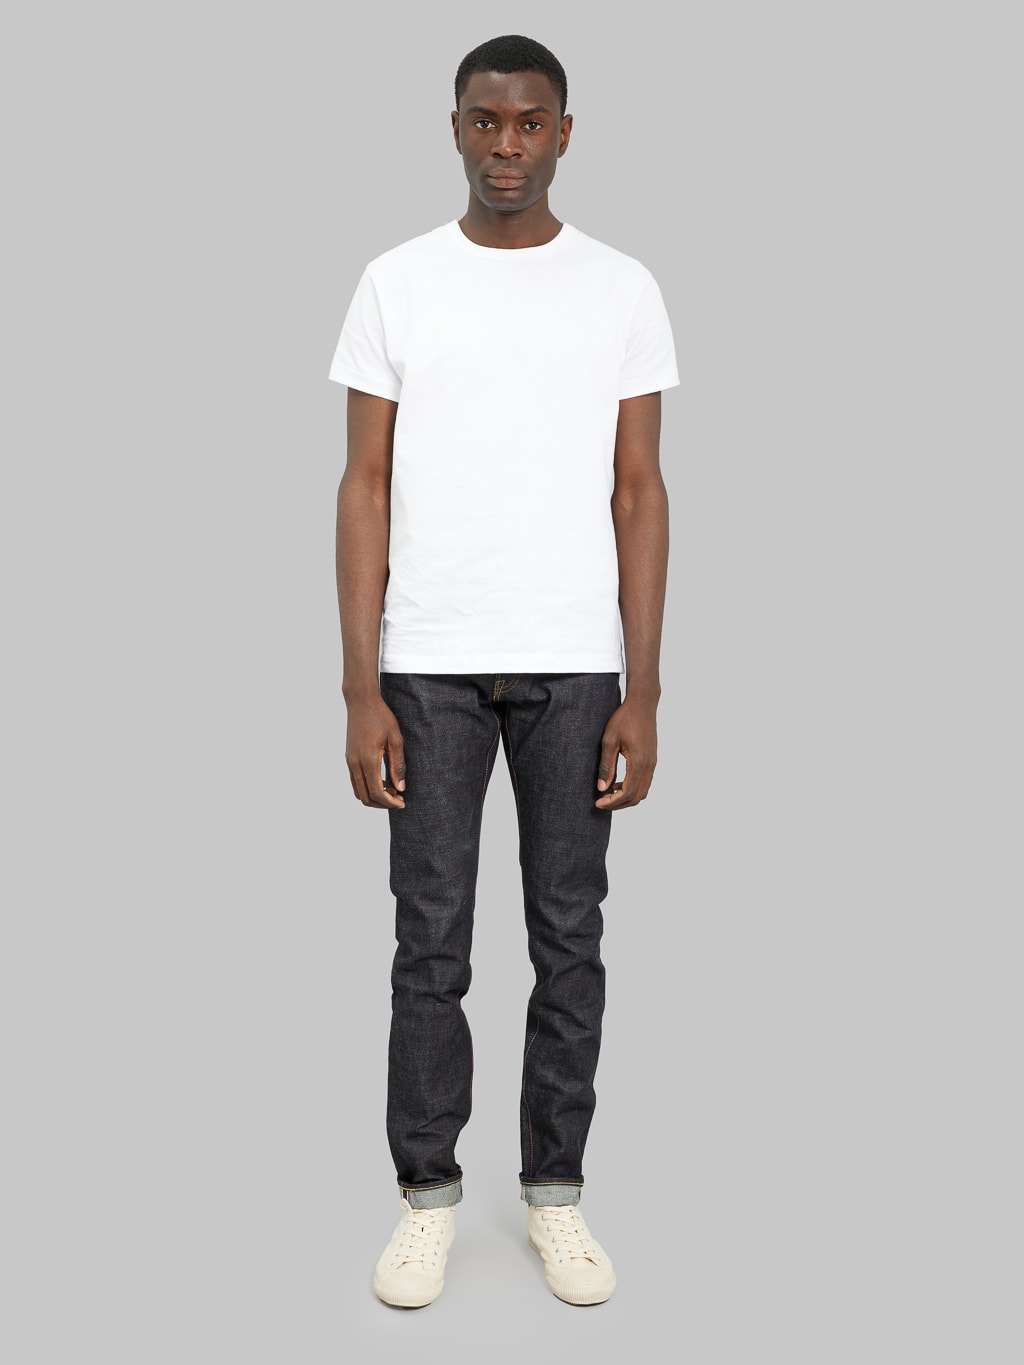 momotaro jeans 0405 v selvedge denim high tapered model front fit